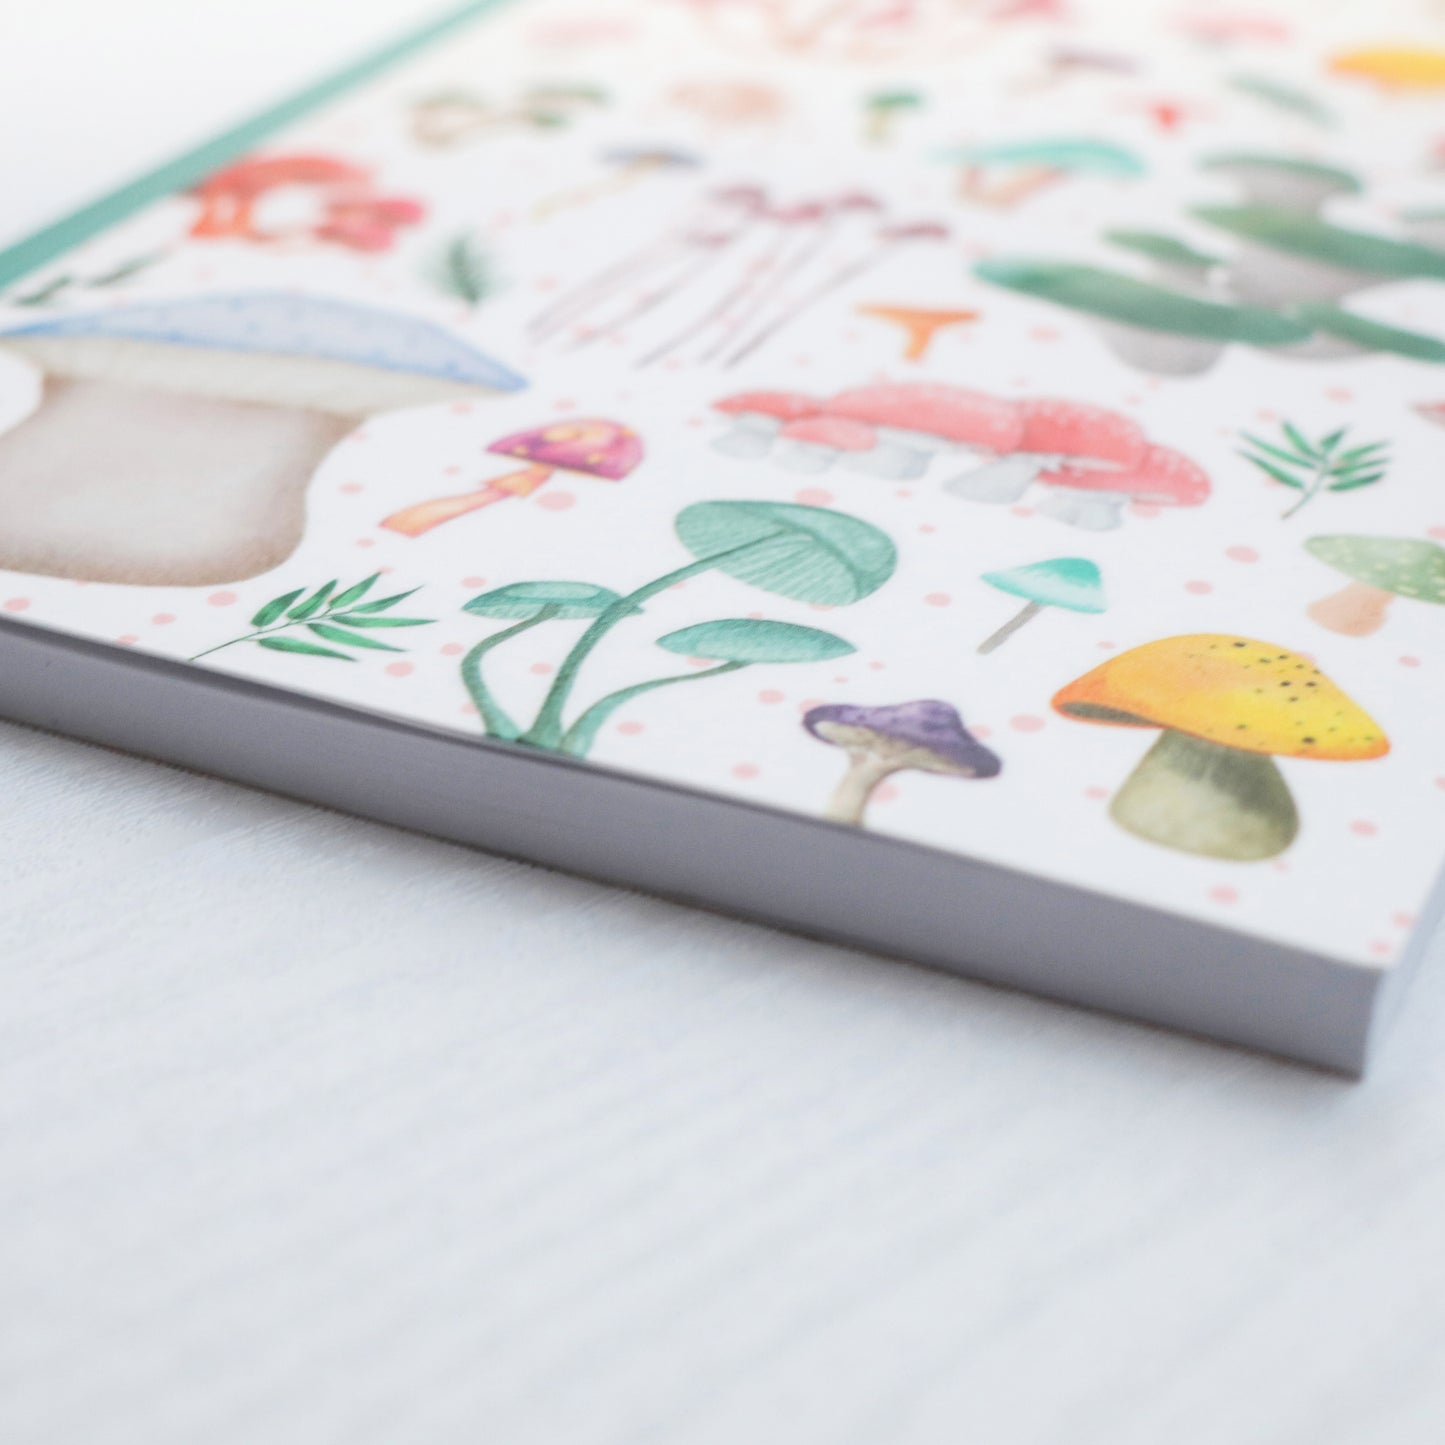 Colorful Mushroom Sketchbook & Notebook